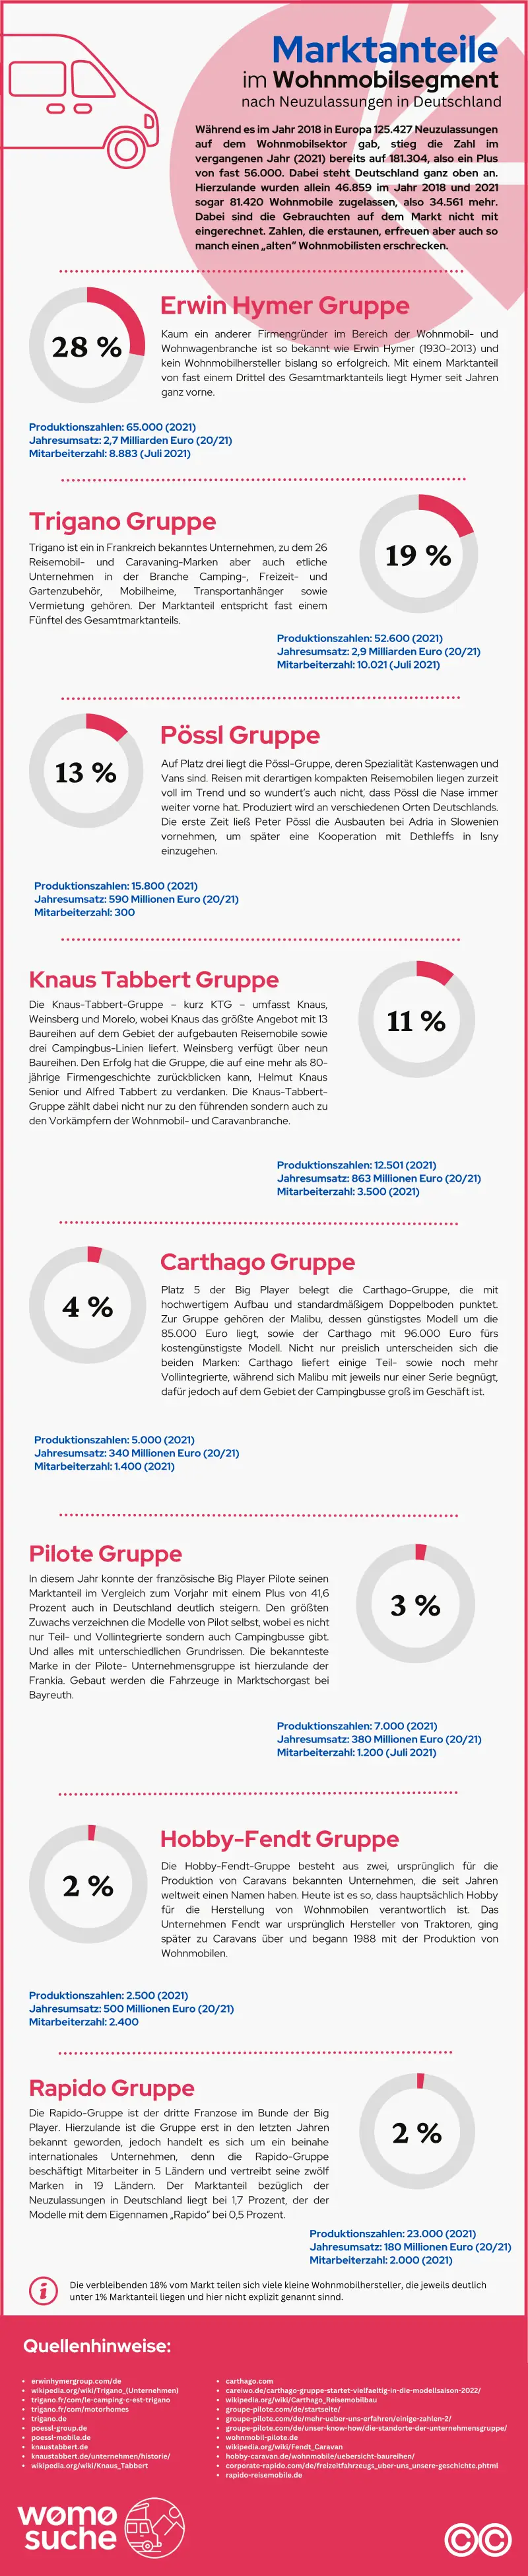 infografik marktanteile wohnmobilhersteller deutschland